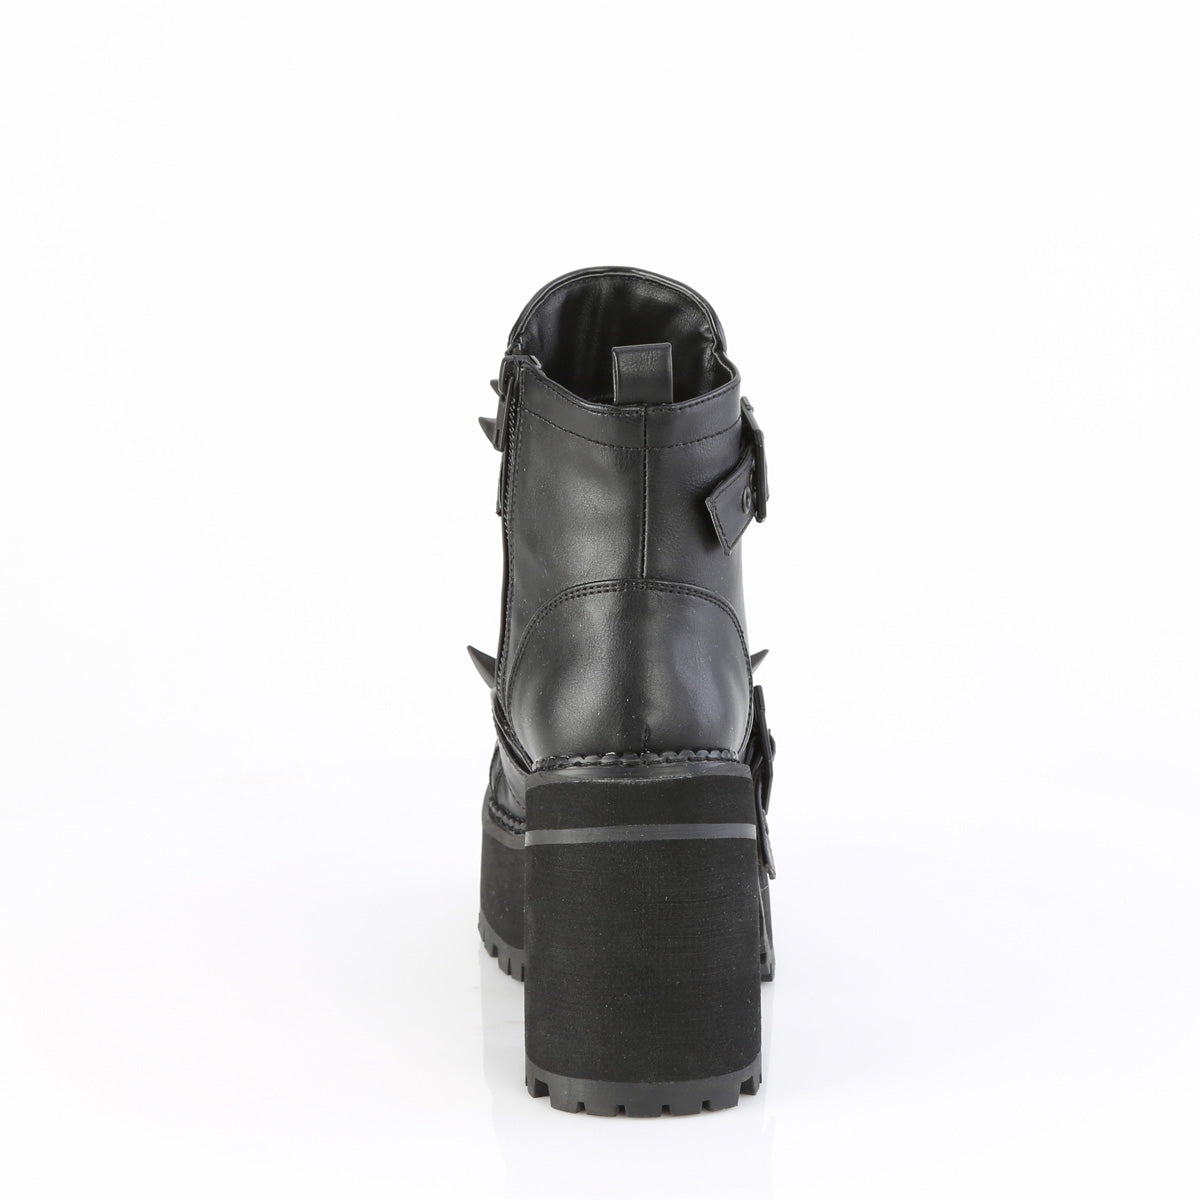 4 Inch Heel ASSAULT-72 Black Vegan Leather